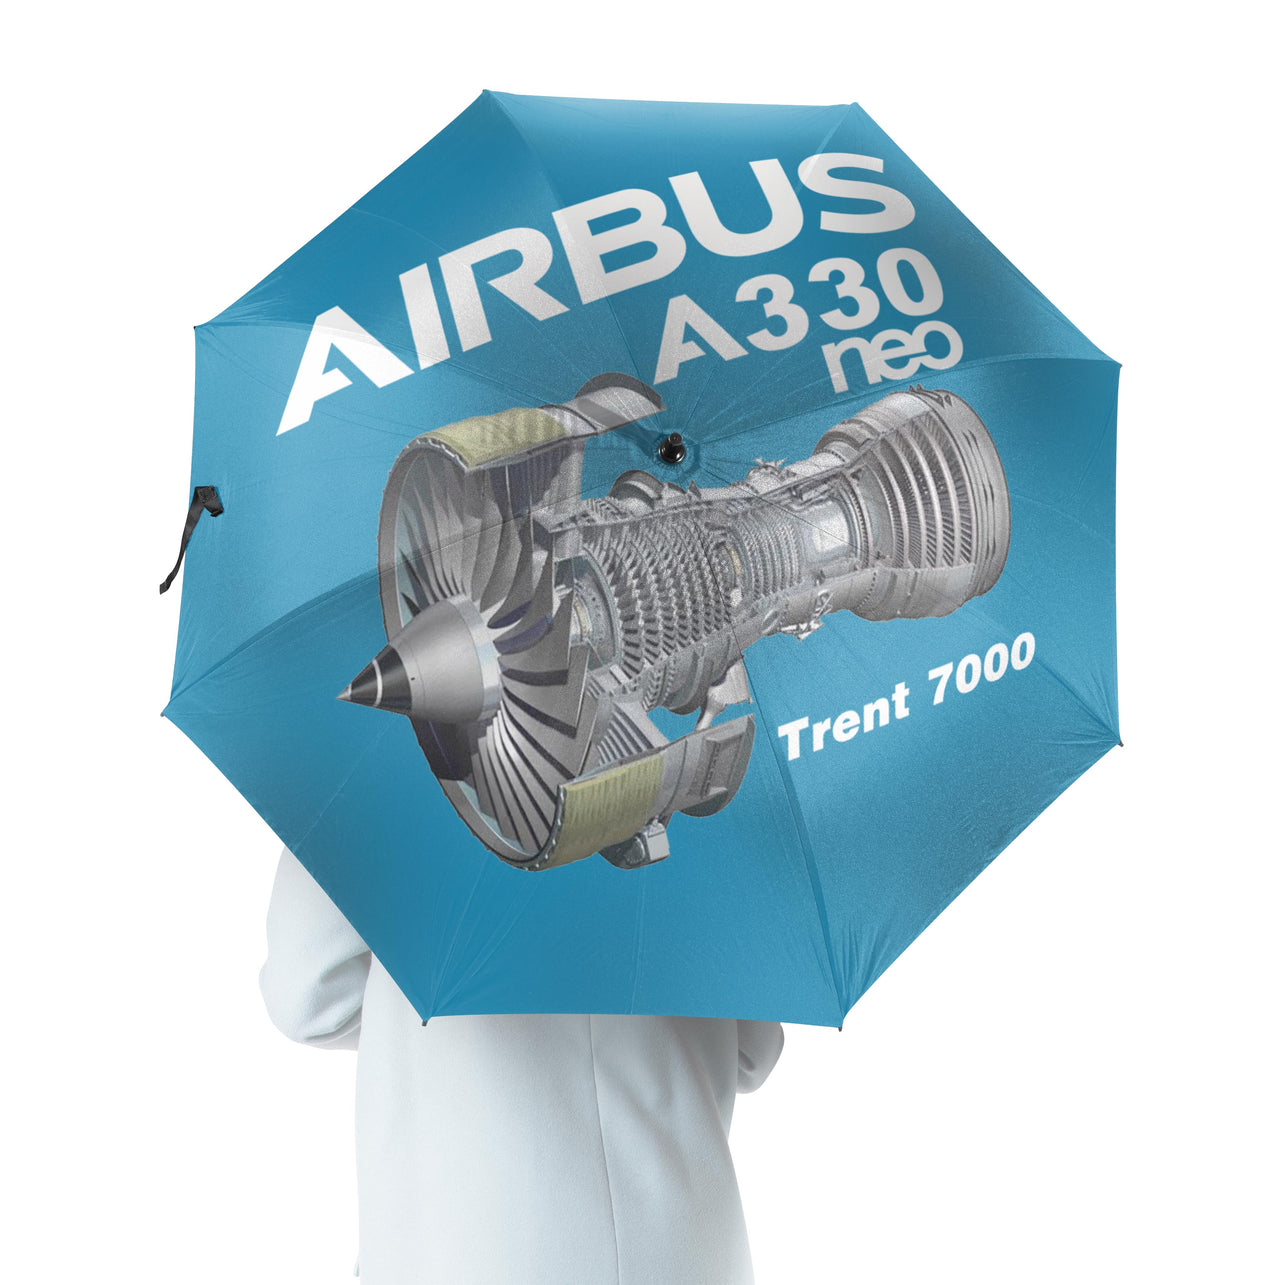 Airbus A330neo & Trent 7000 Designed Umbrella